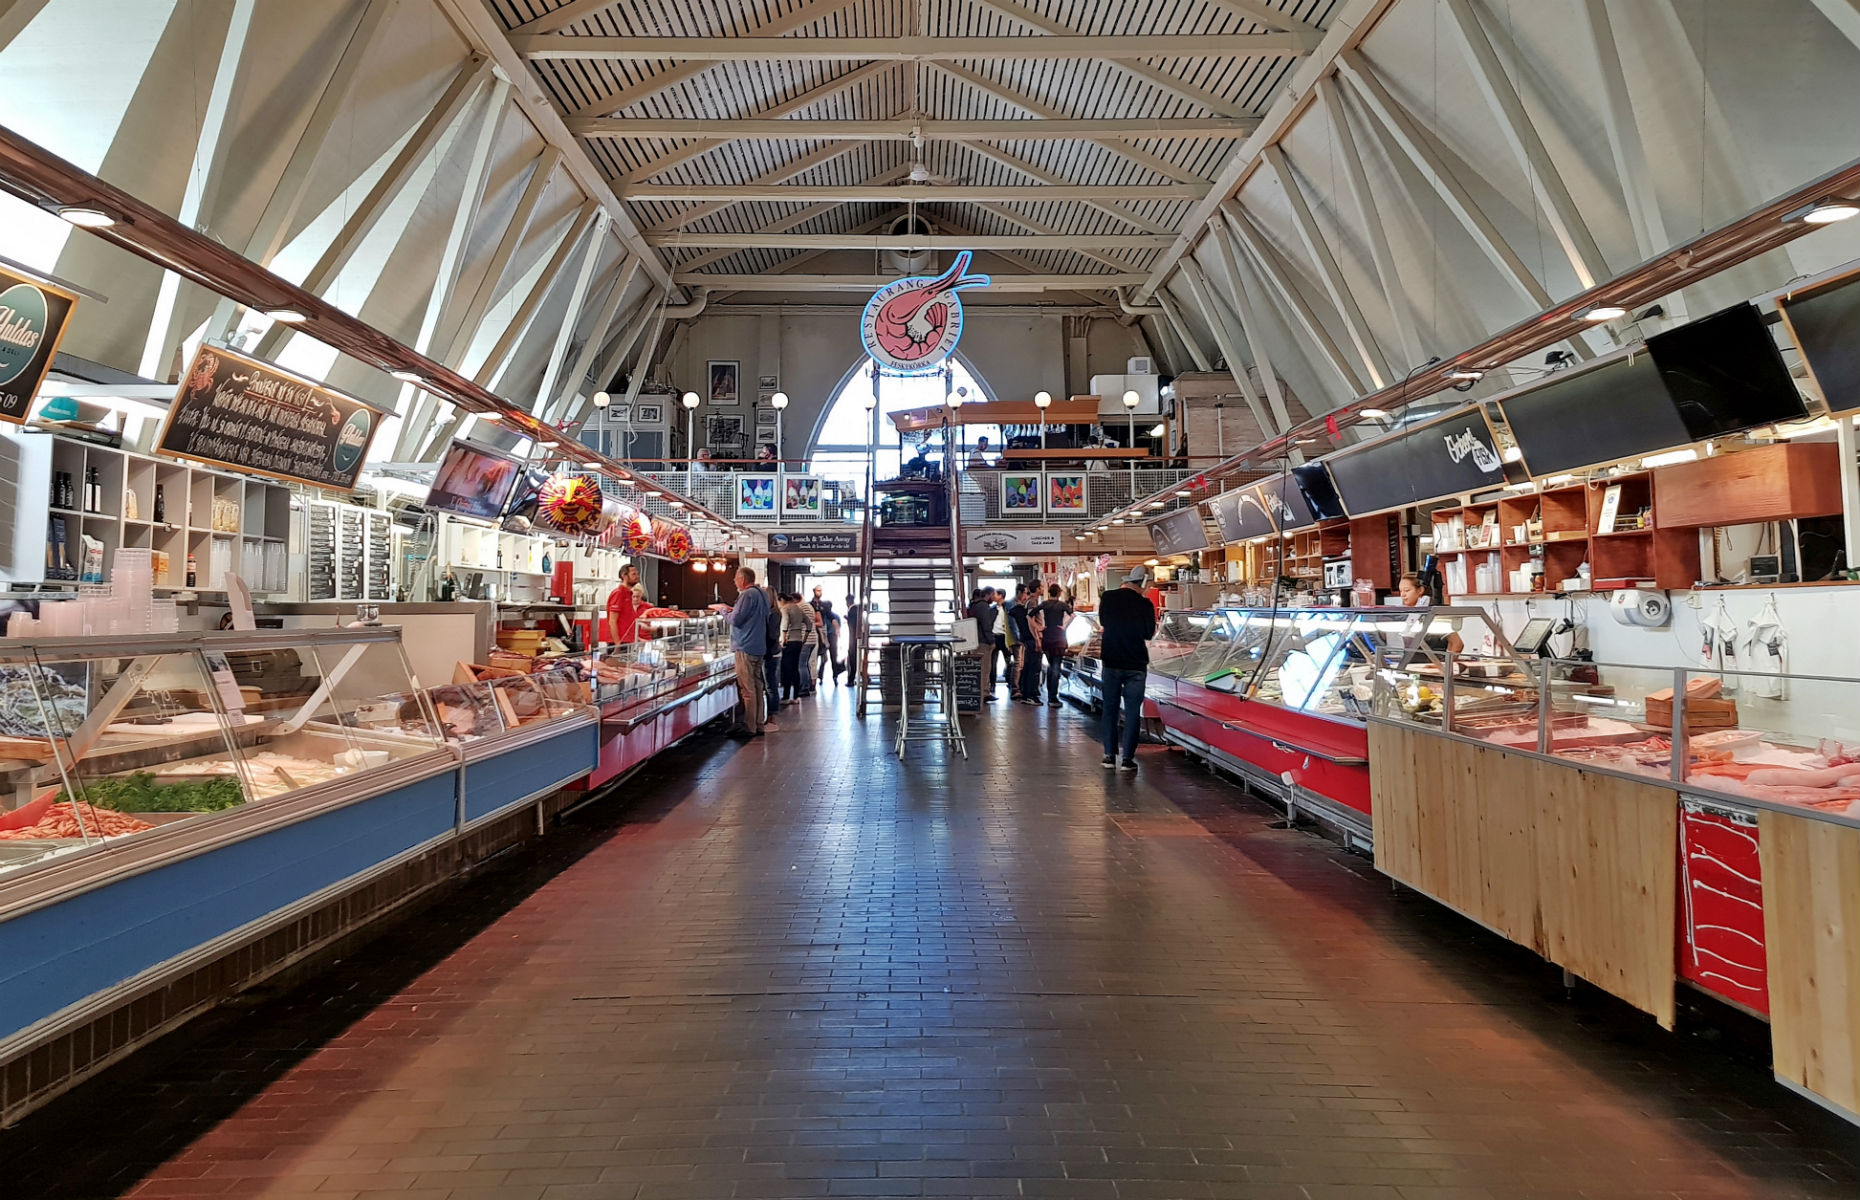 Gothenburg market hall